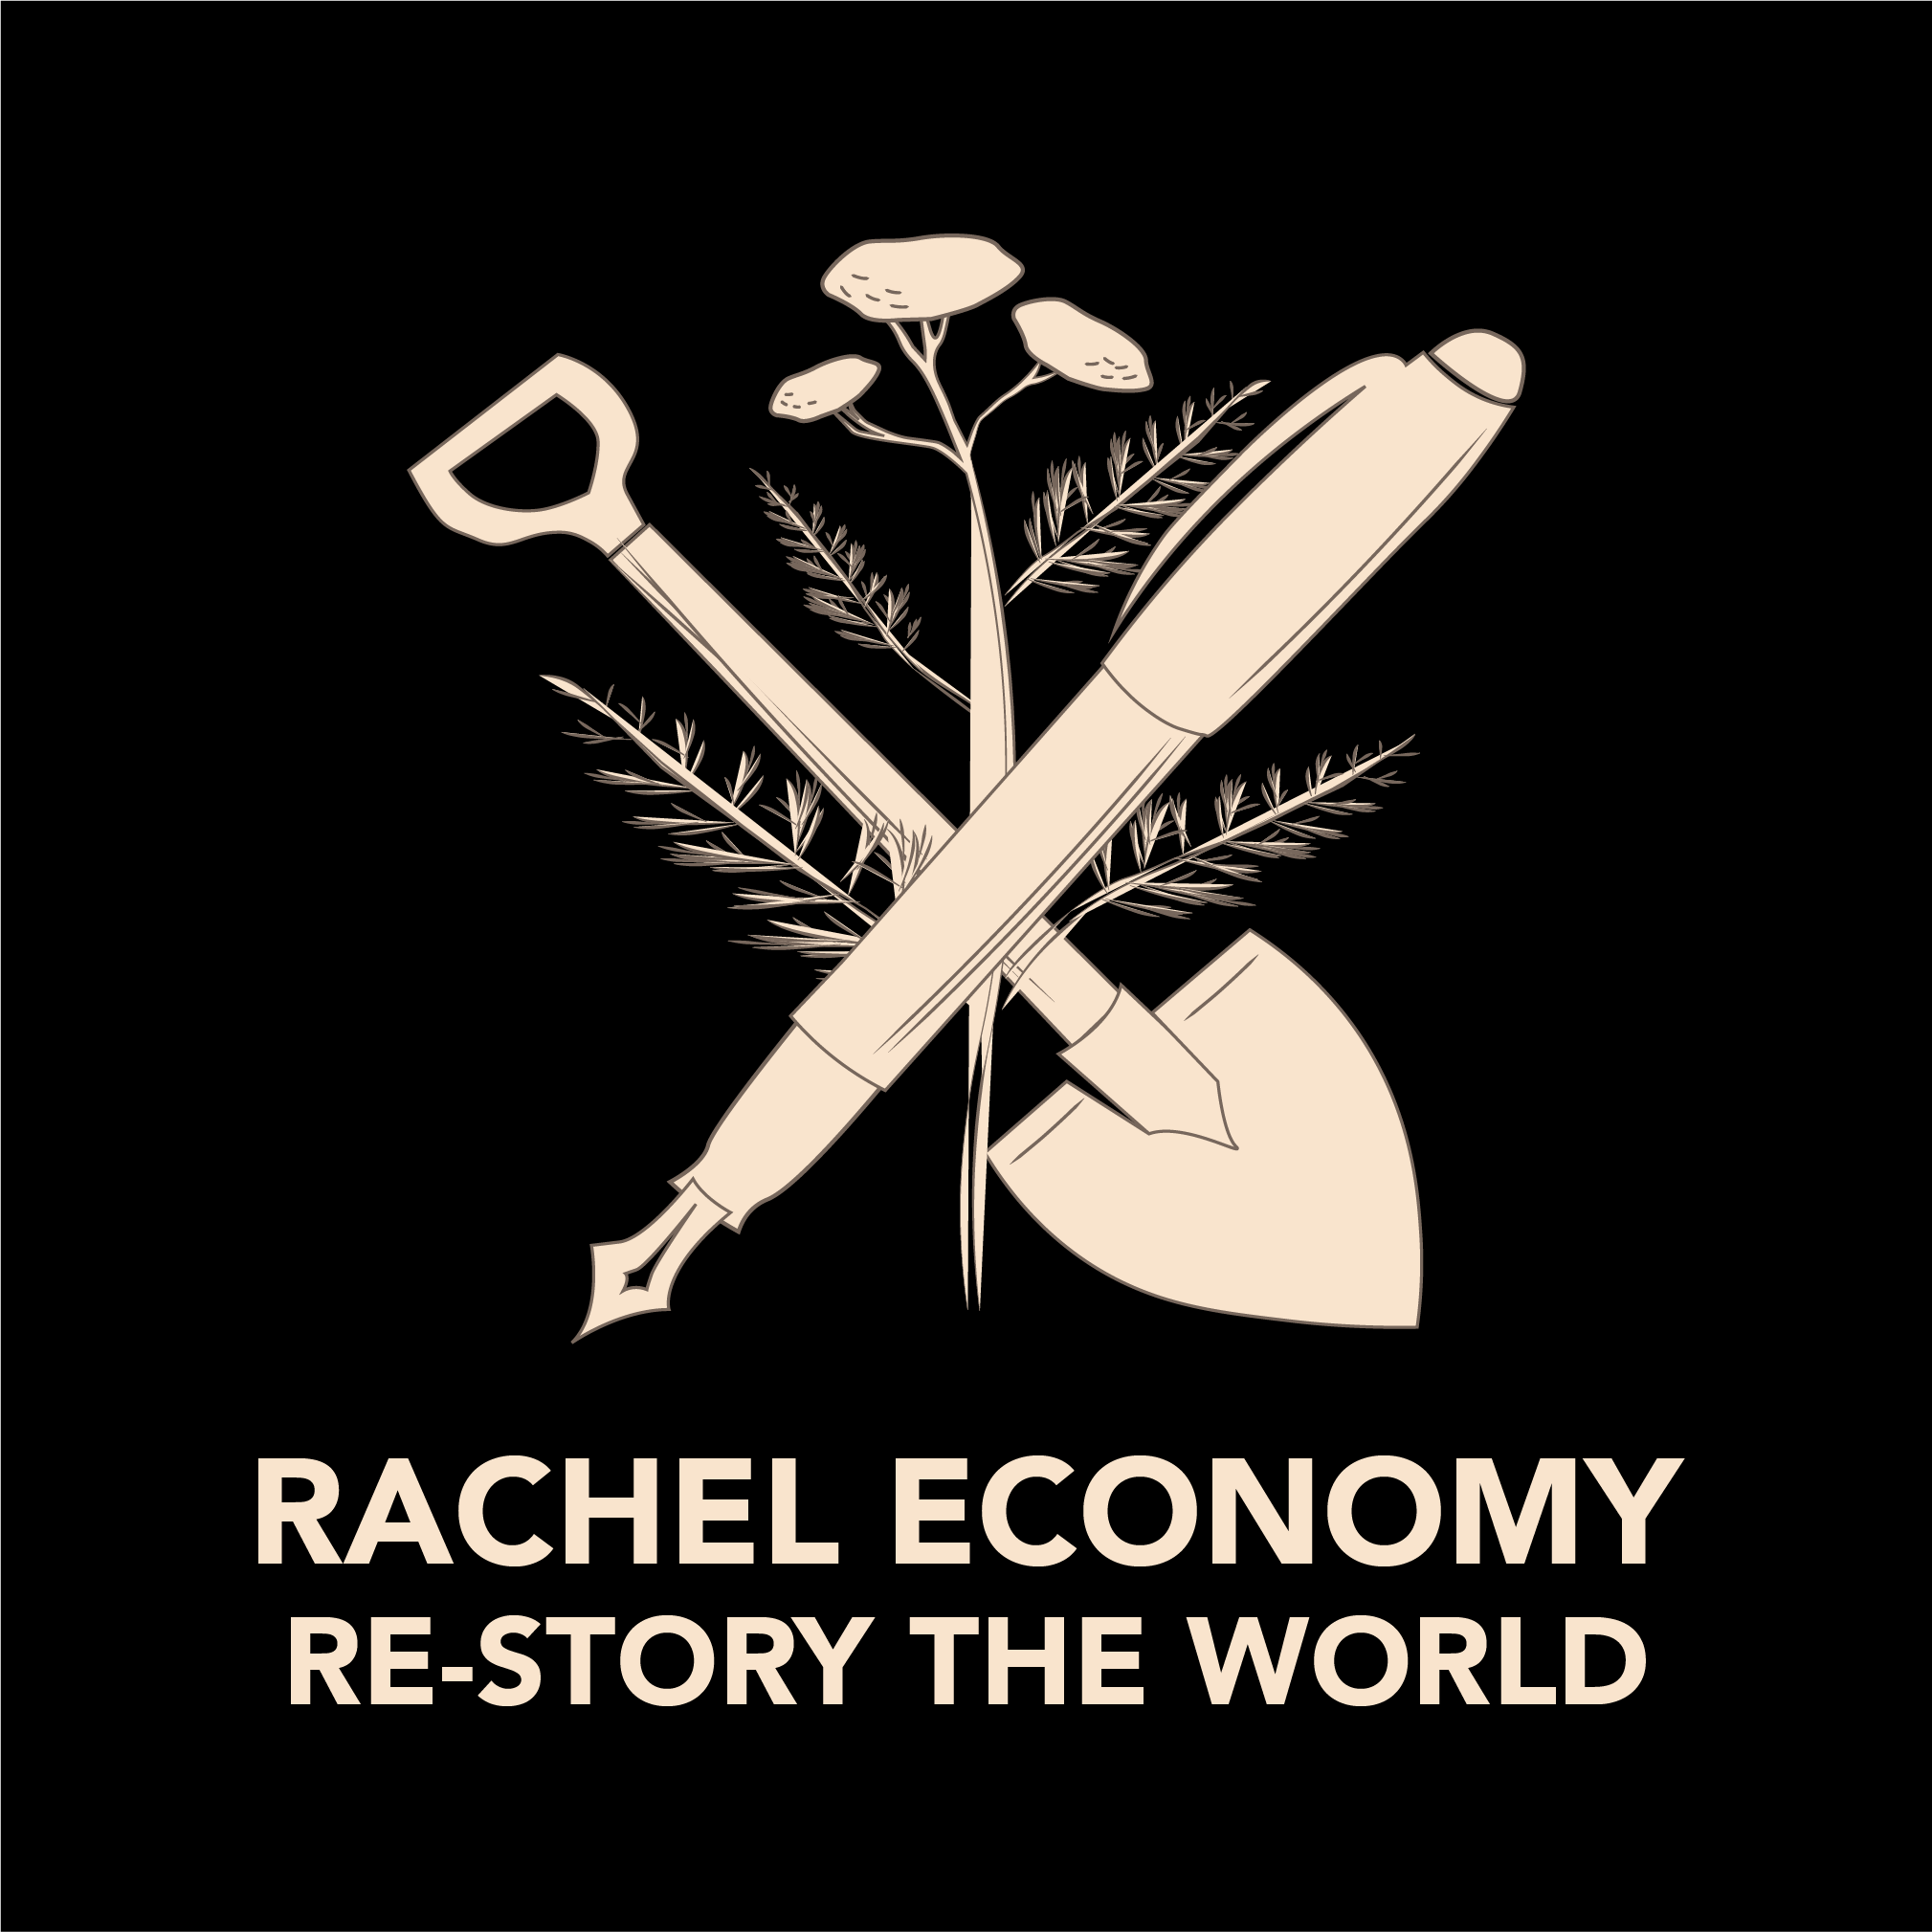 Rachel Economy